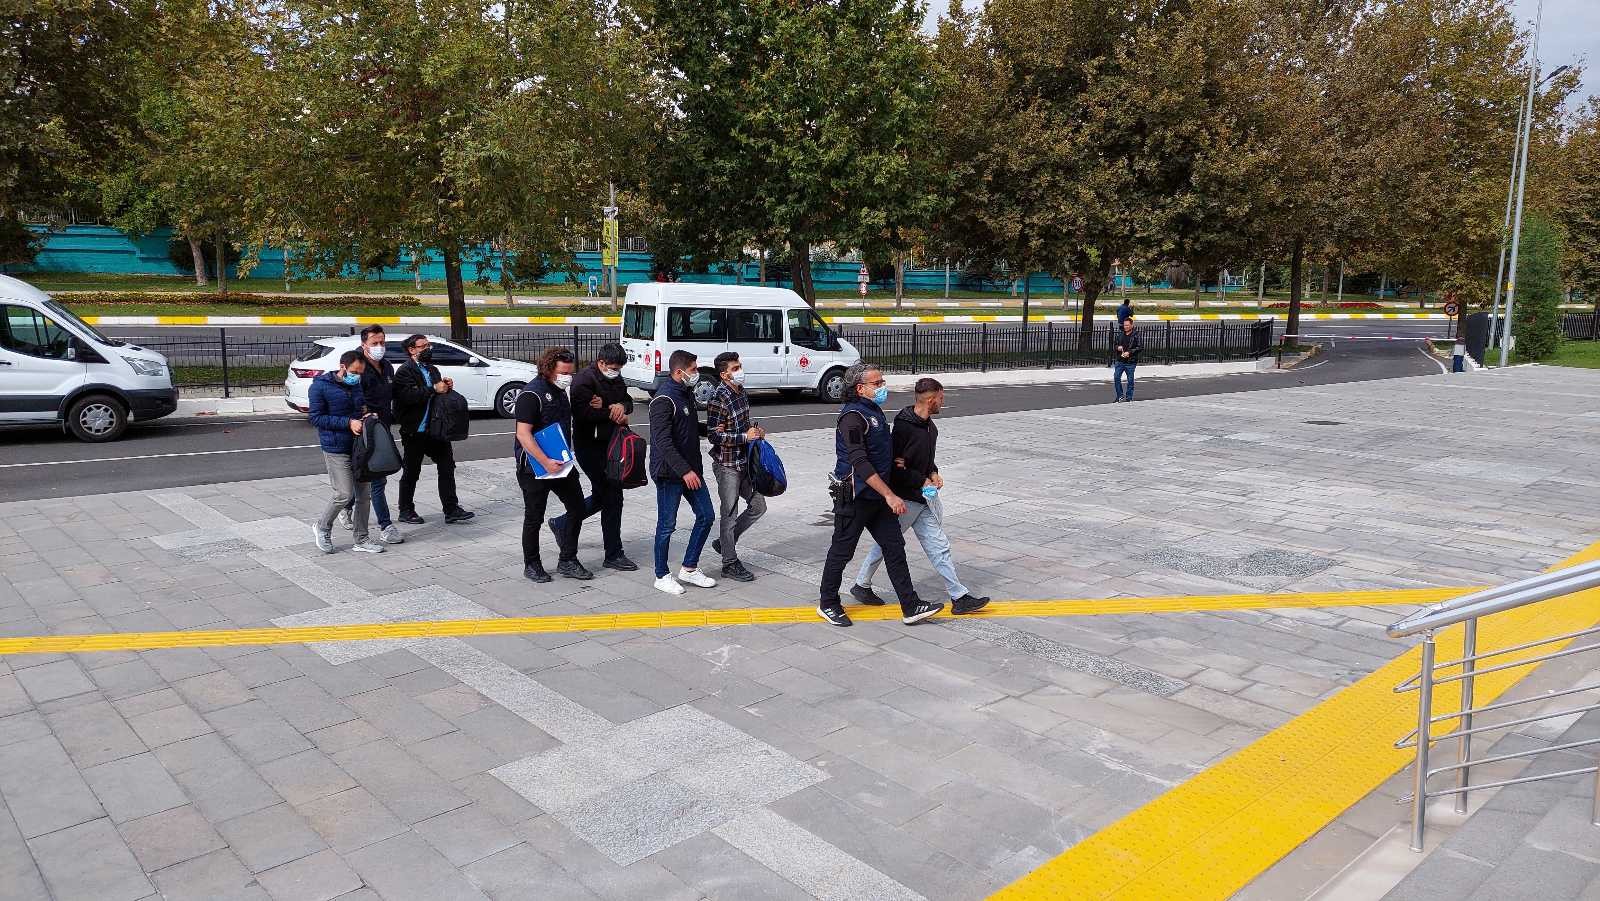 Yunanistan’a kaçmaya çalışan FETÖ üyeliğinden hükümlü 5 kişi yakalandı #tekirdag